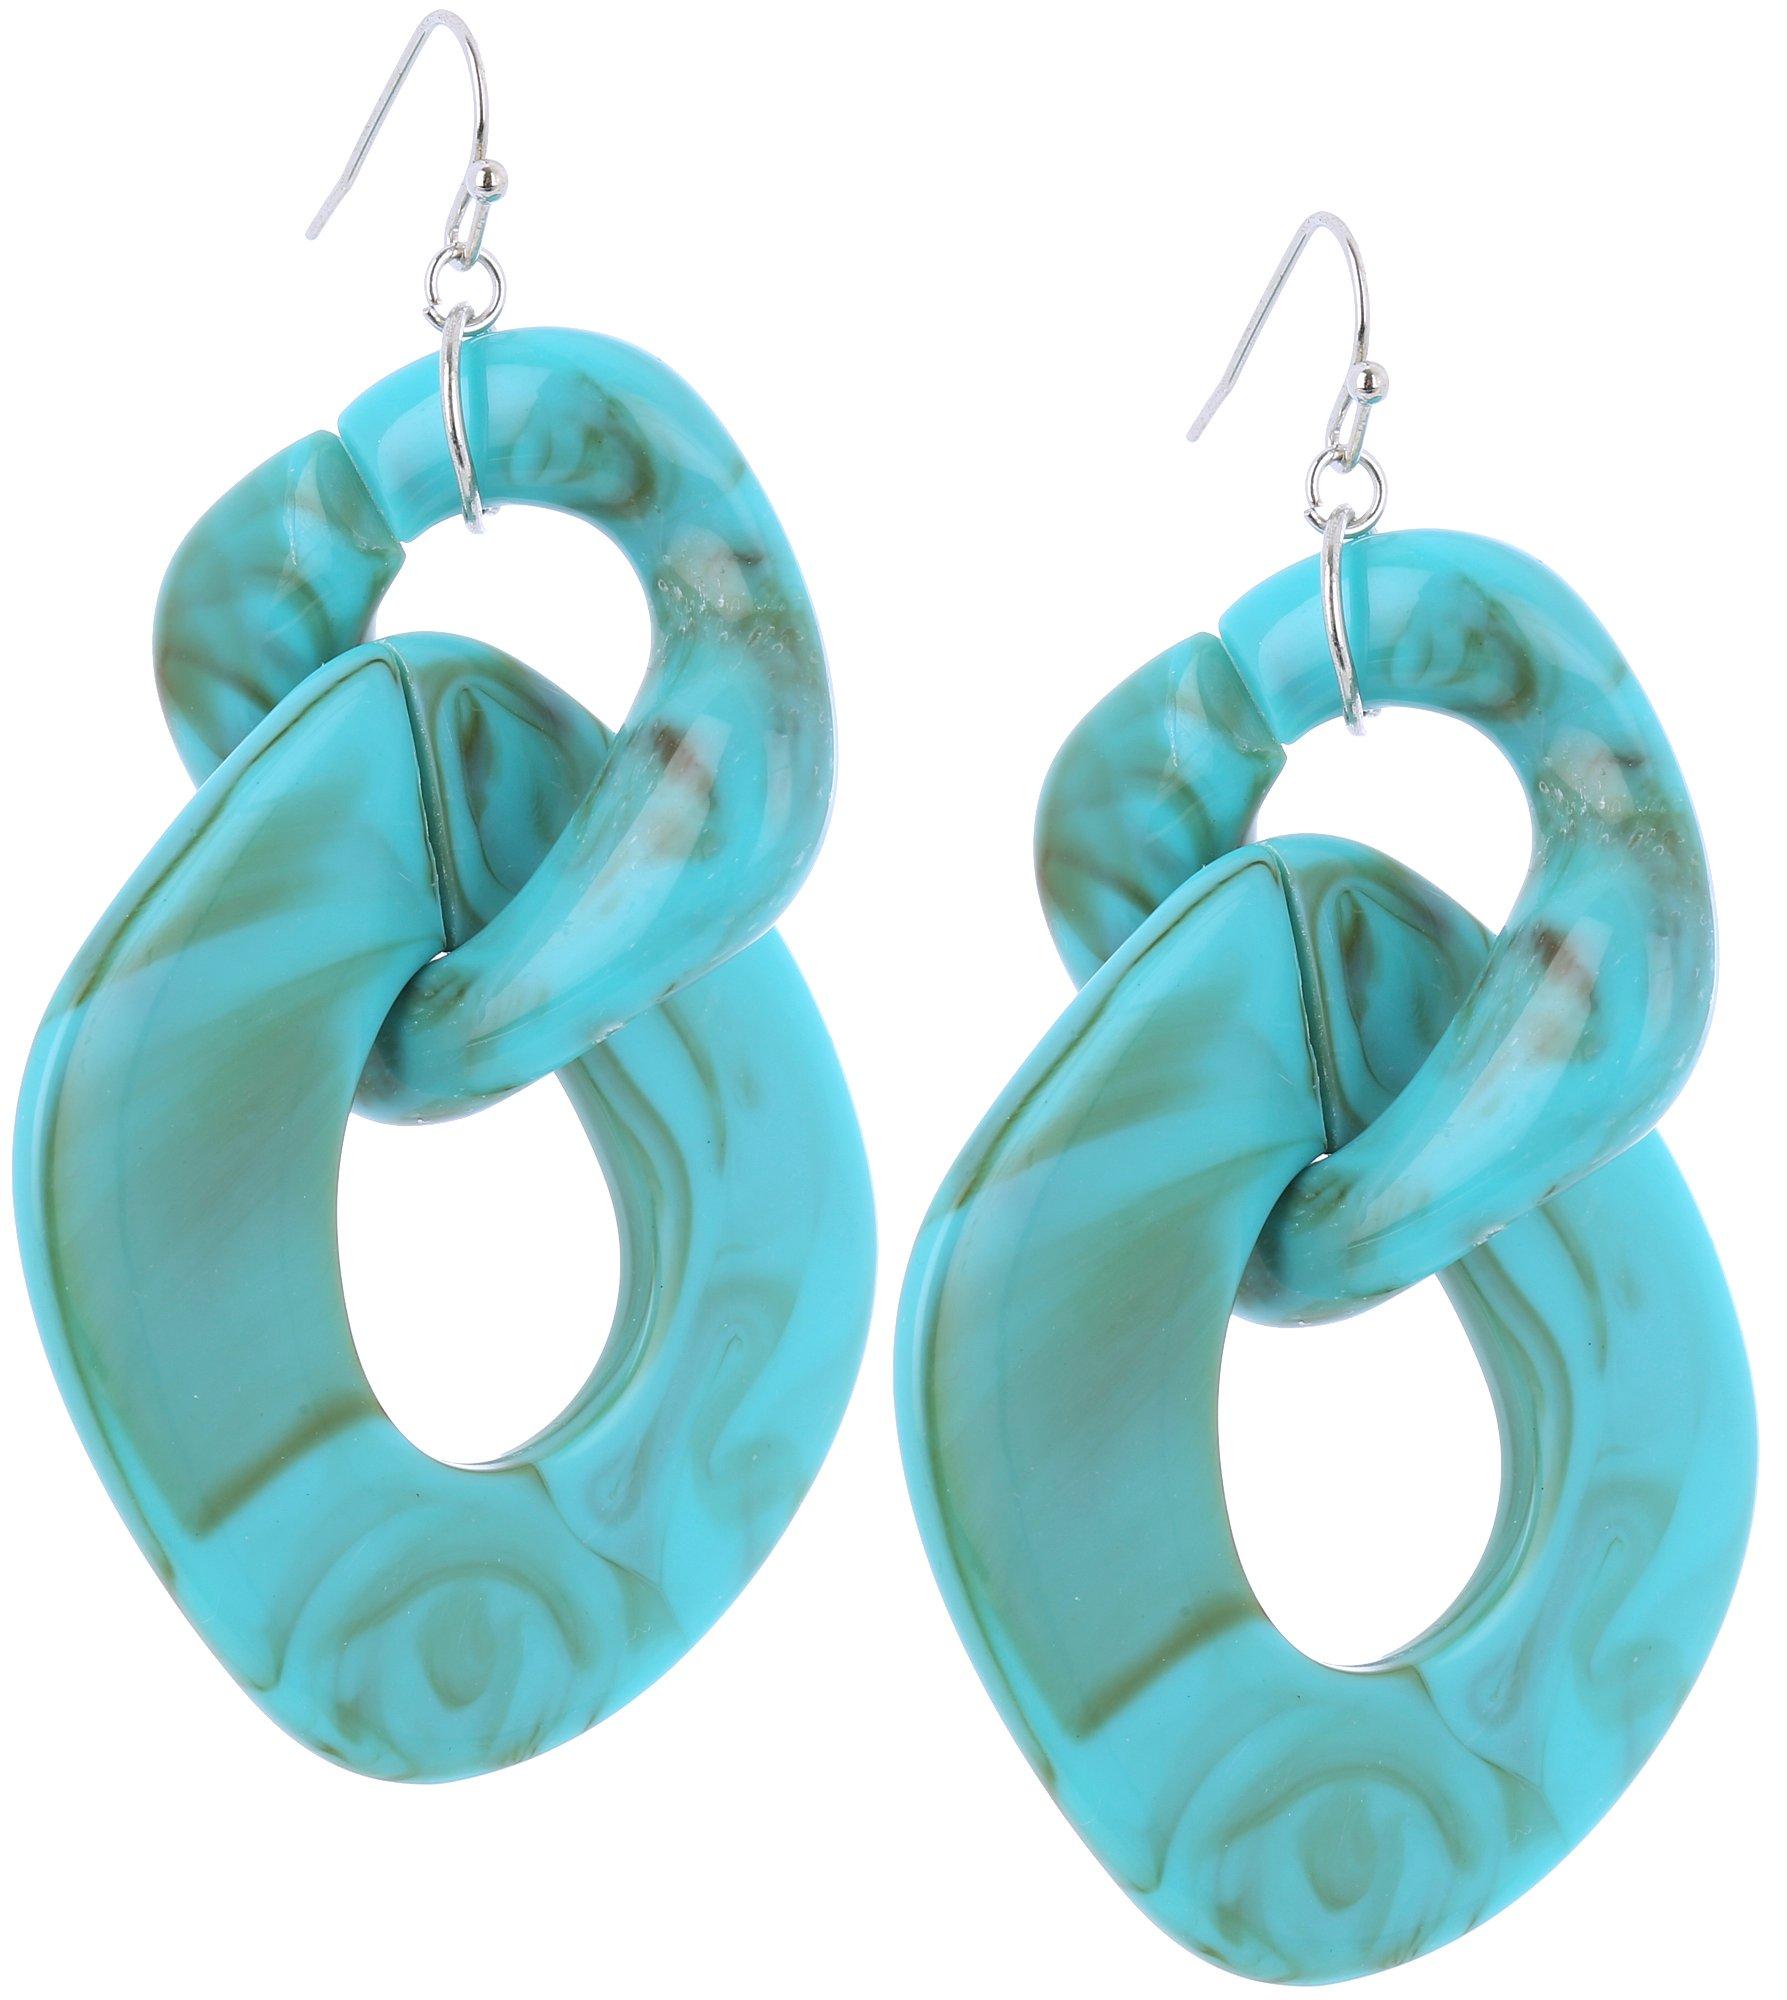 3 In. Marbleized Double Links Dangle Earrings